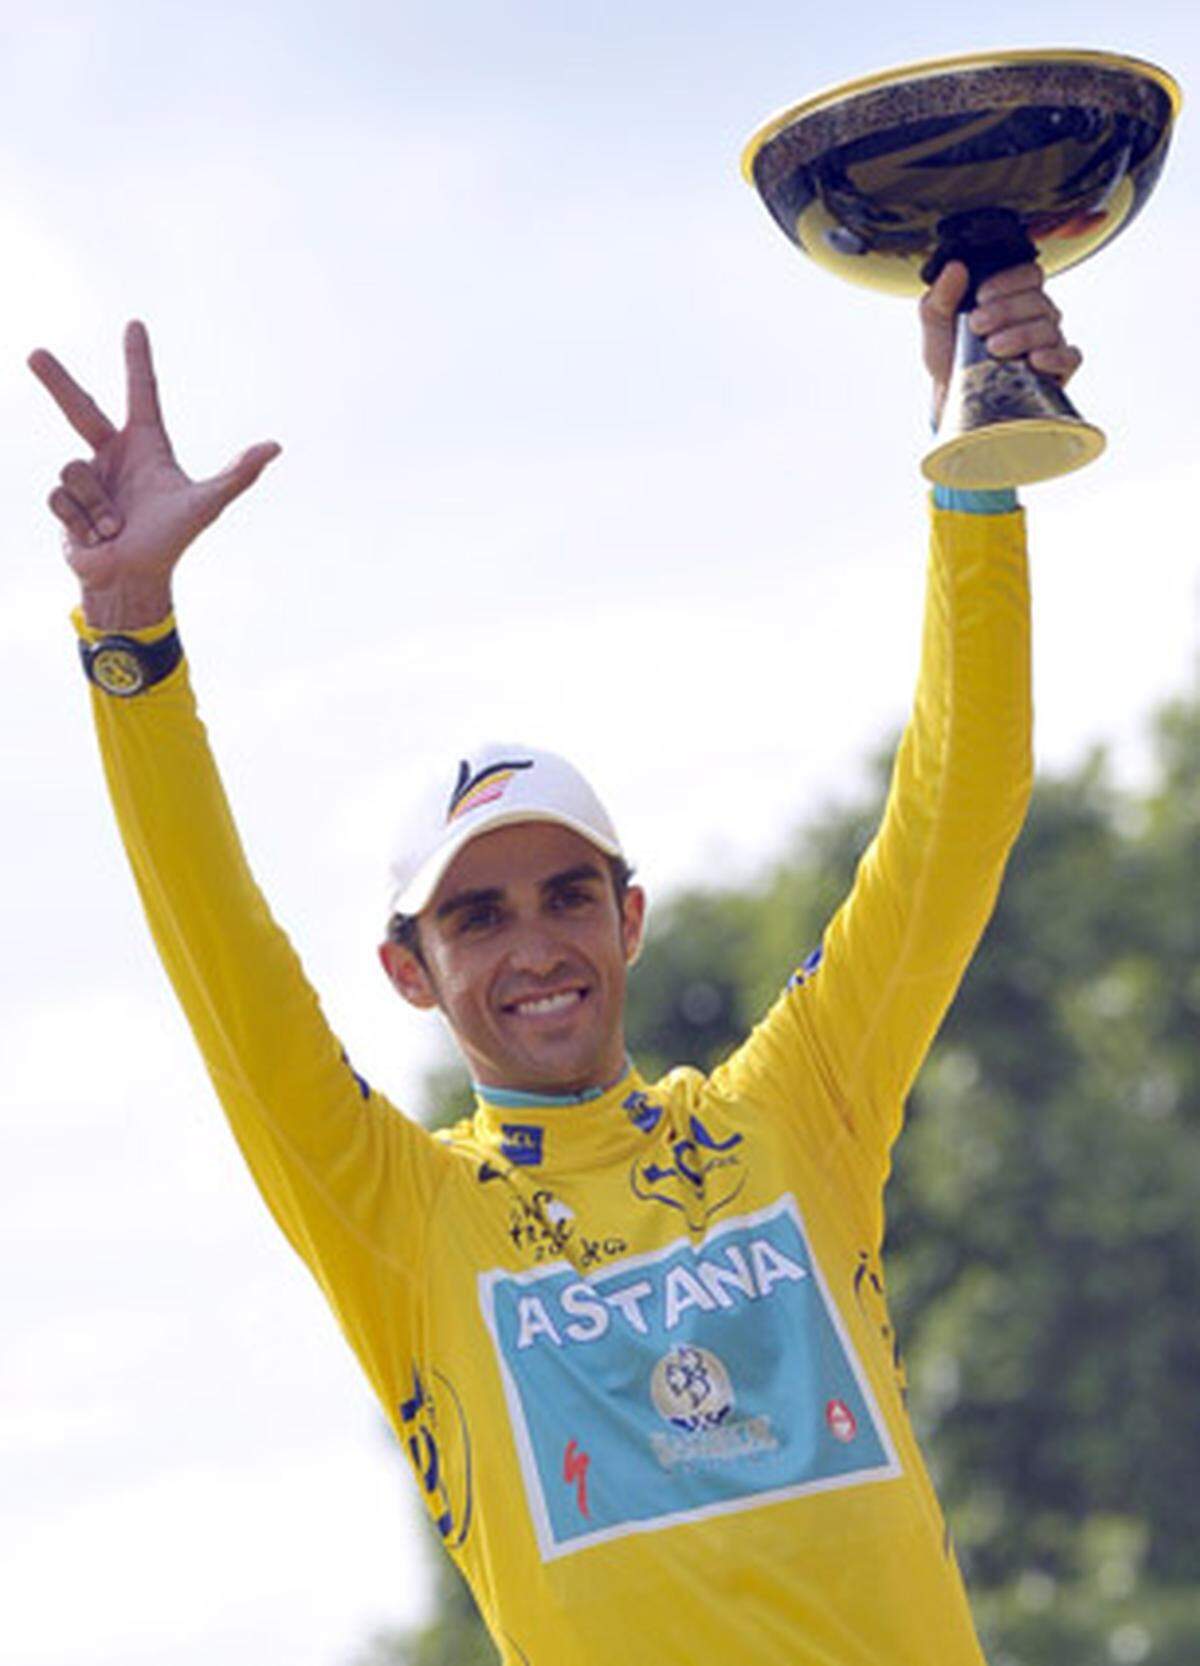 Der zweifache Tour-de-France-Sieger Alberto Contador steht unter Dopingverdacht. Eine Probe von der Tour 2010, die der Spanier gewann, zeigt "sehr kleine" Spuren der verbotenen Substanz Clenbuterol. Sowohl die A- als auch die B-Probe waren positiv. Der Radprofi wird deswegen "formal und provisorisch suspendiert". Contador spricht von einer Lebensmittelverunreinigung.